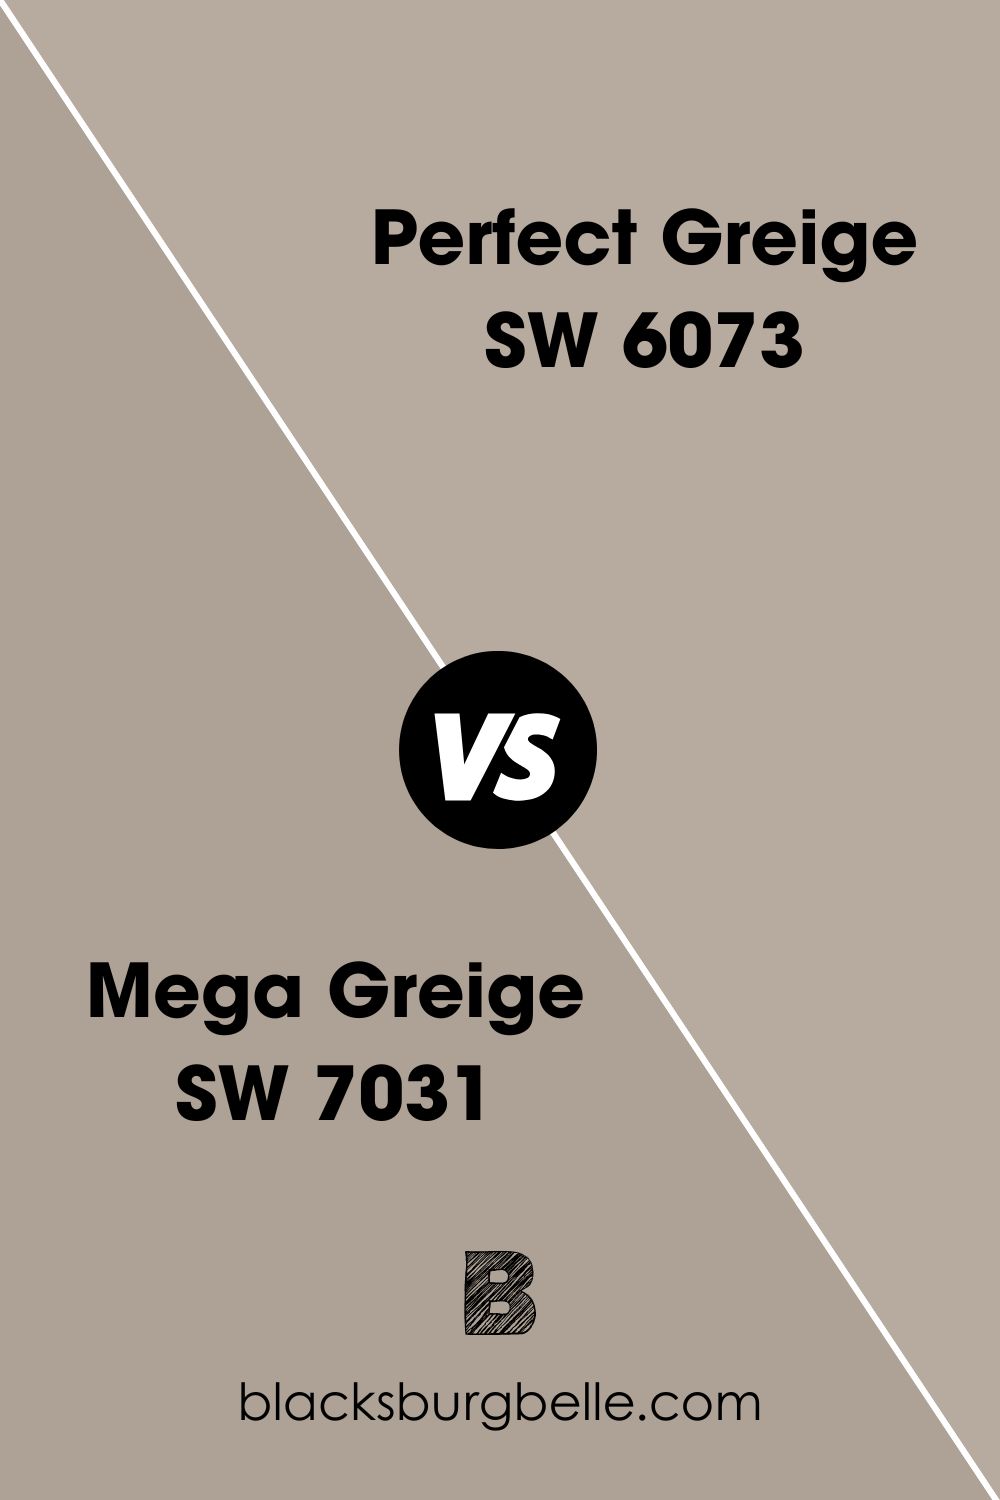 Mega Greige SW 7031